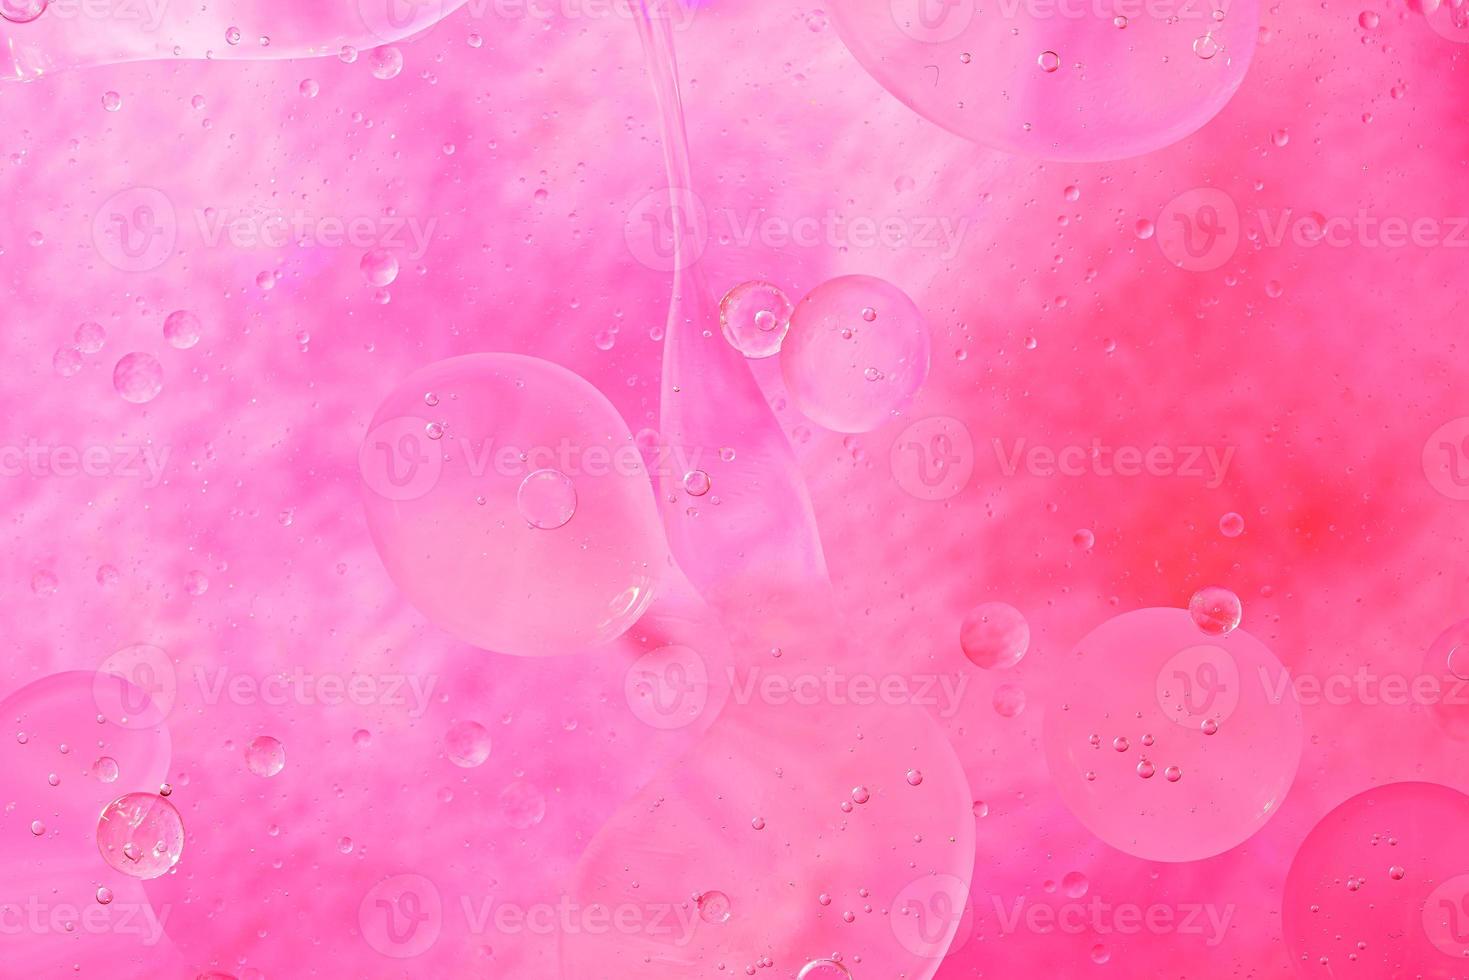 Foto von Öl auf einer Wasseroberfläche mit Blasen. abstrakter bunter Hintergrund. Makro Nahaufnahme